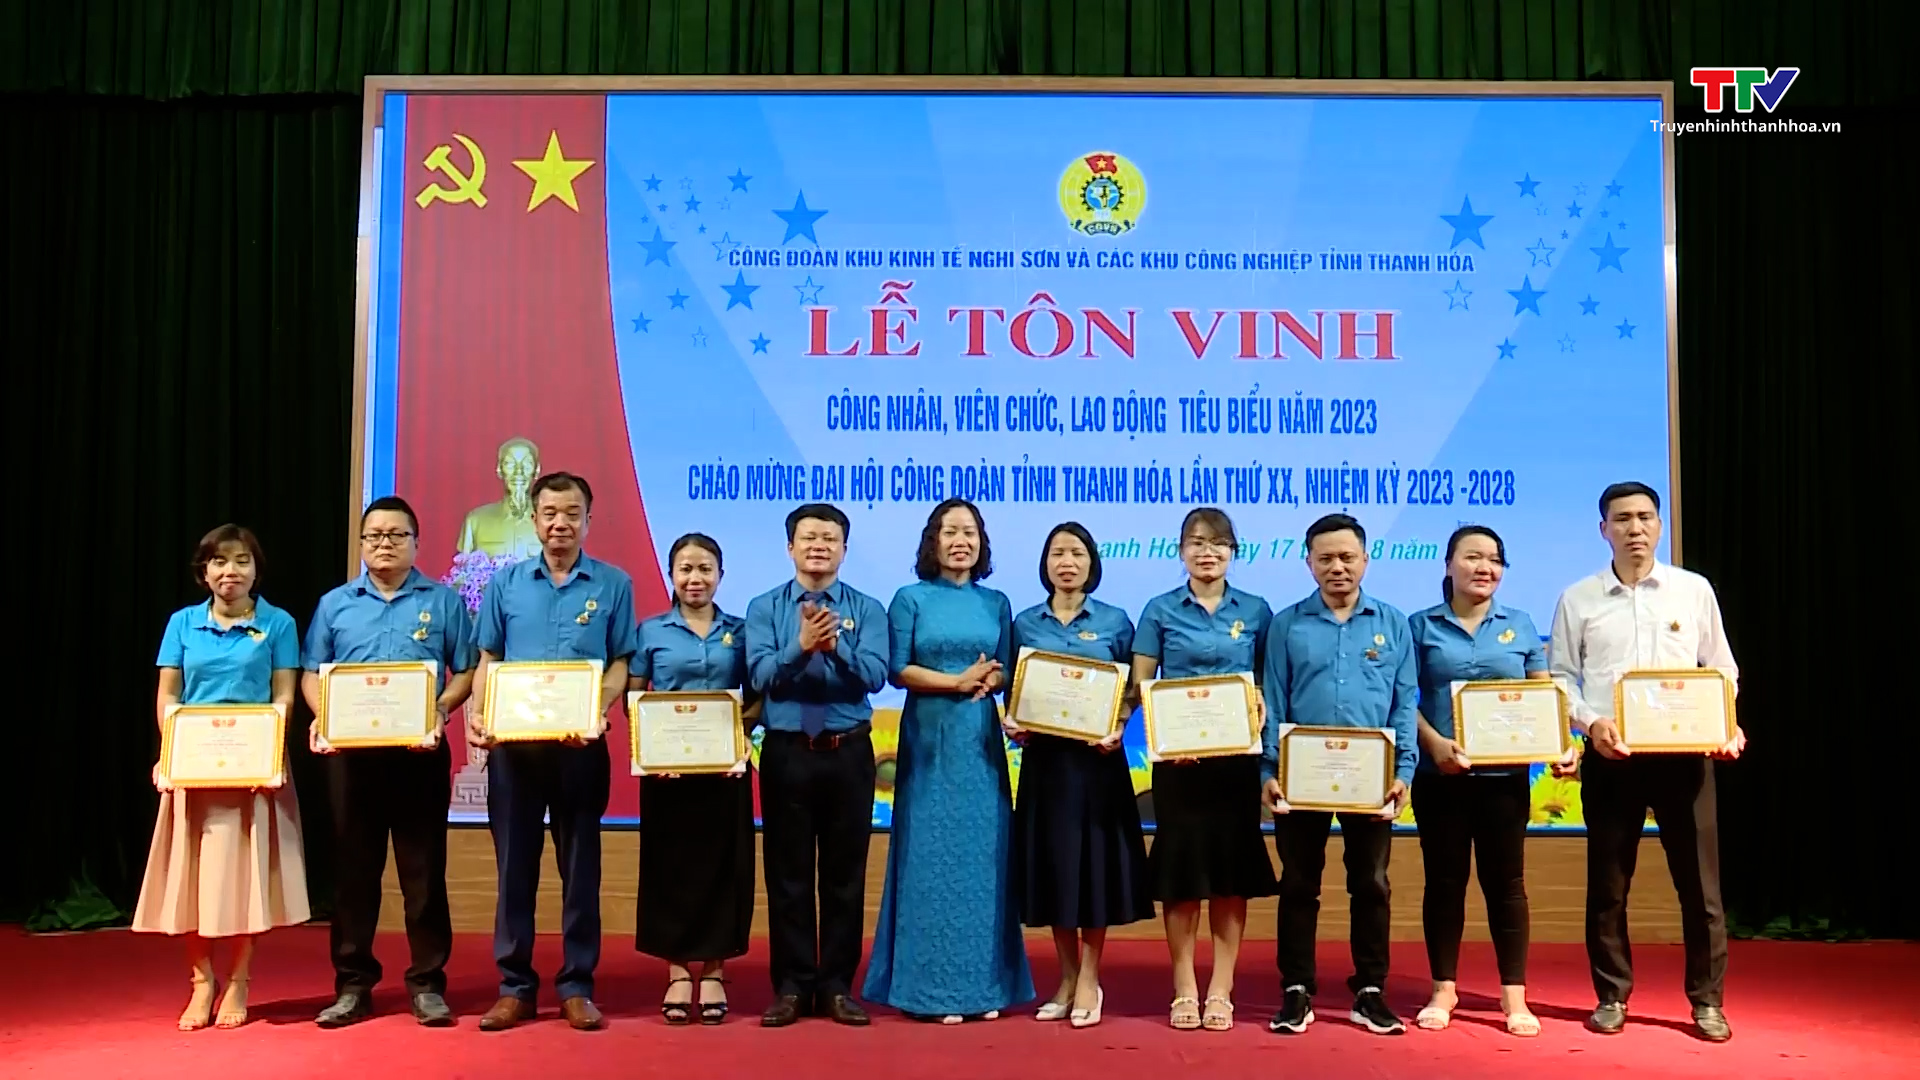 Công đoàn Khu kinh tế Nghi Sơn & các khu công nghiệp tỉnh Thanh Hóa tôn vinh công nhân, viên chức, lao động tiêu biểu  - Ảnh 2.